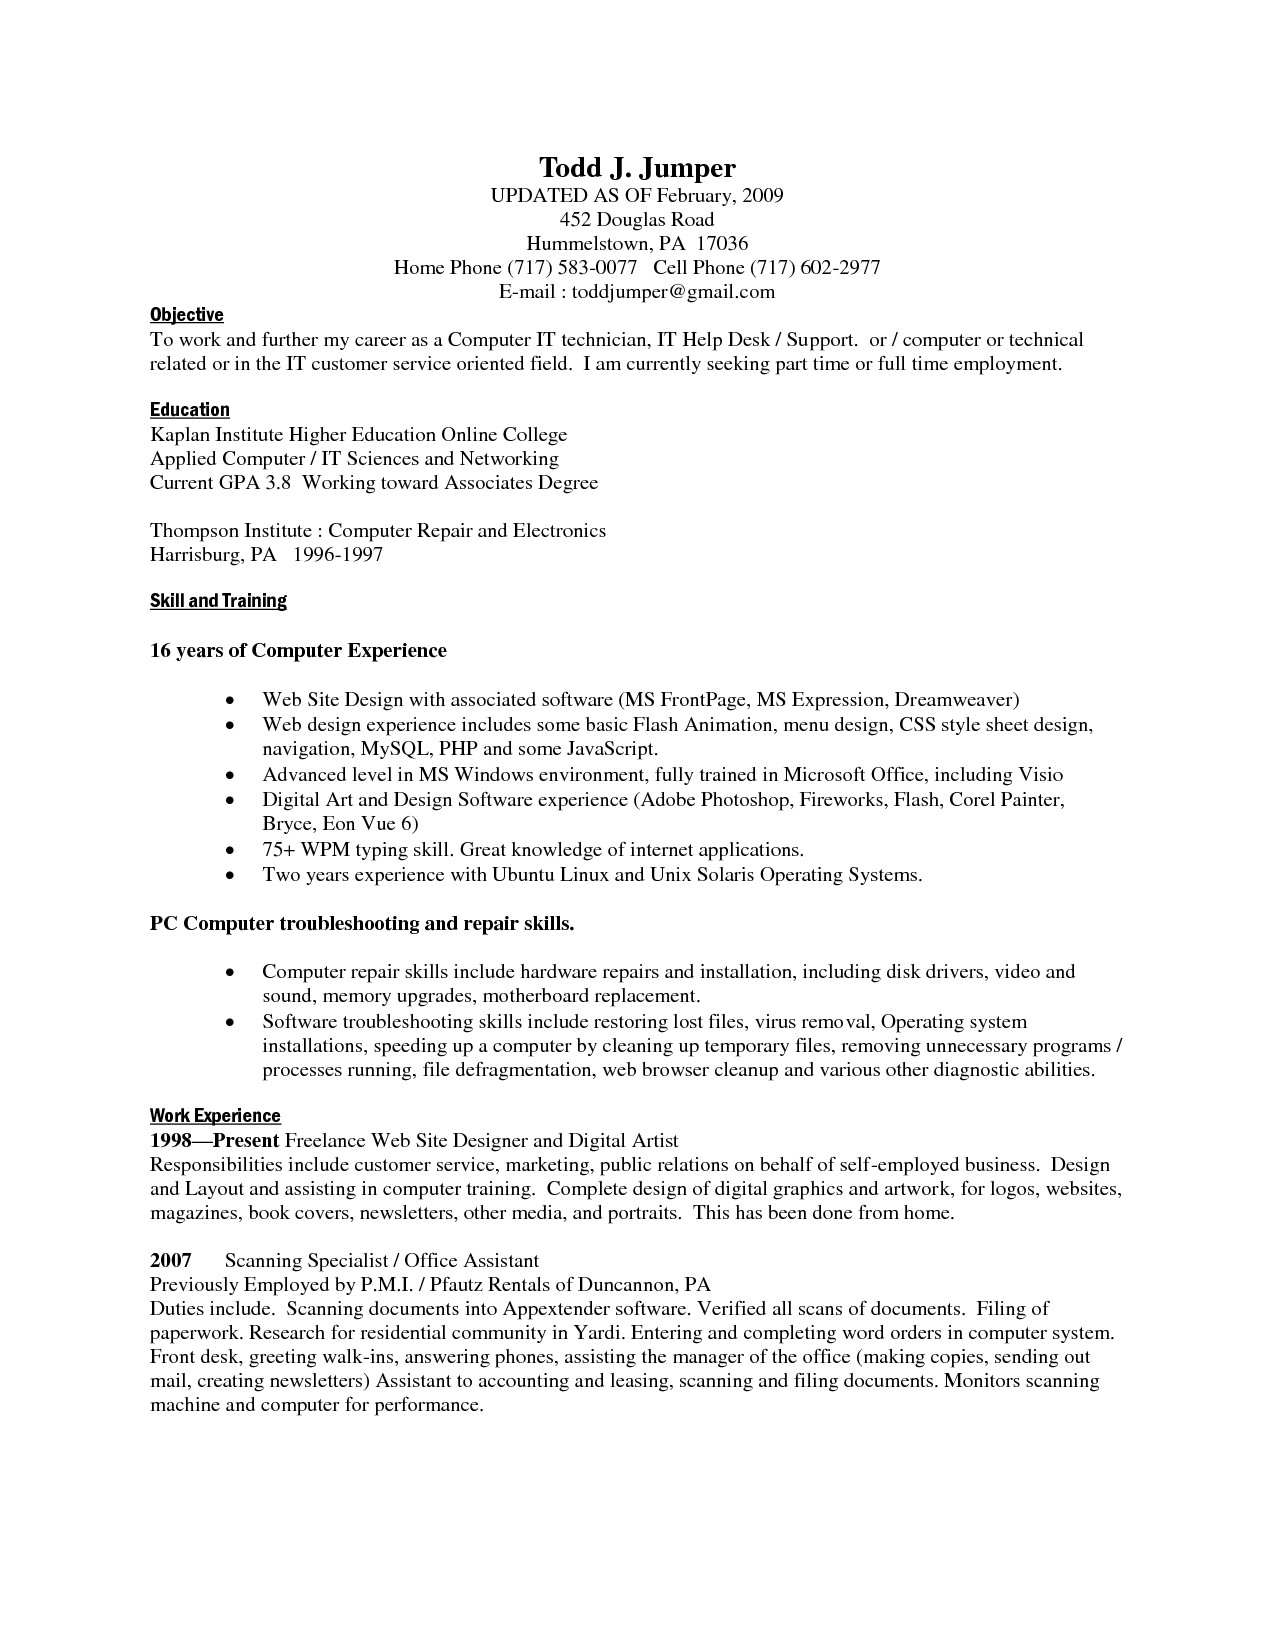 computer skill resume Fieldstation • Aceeducation